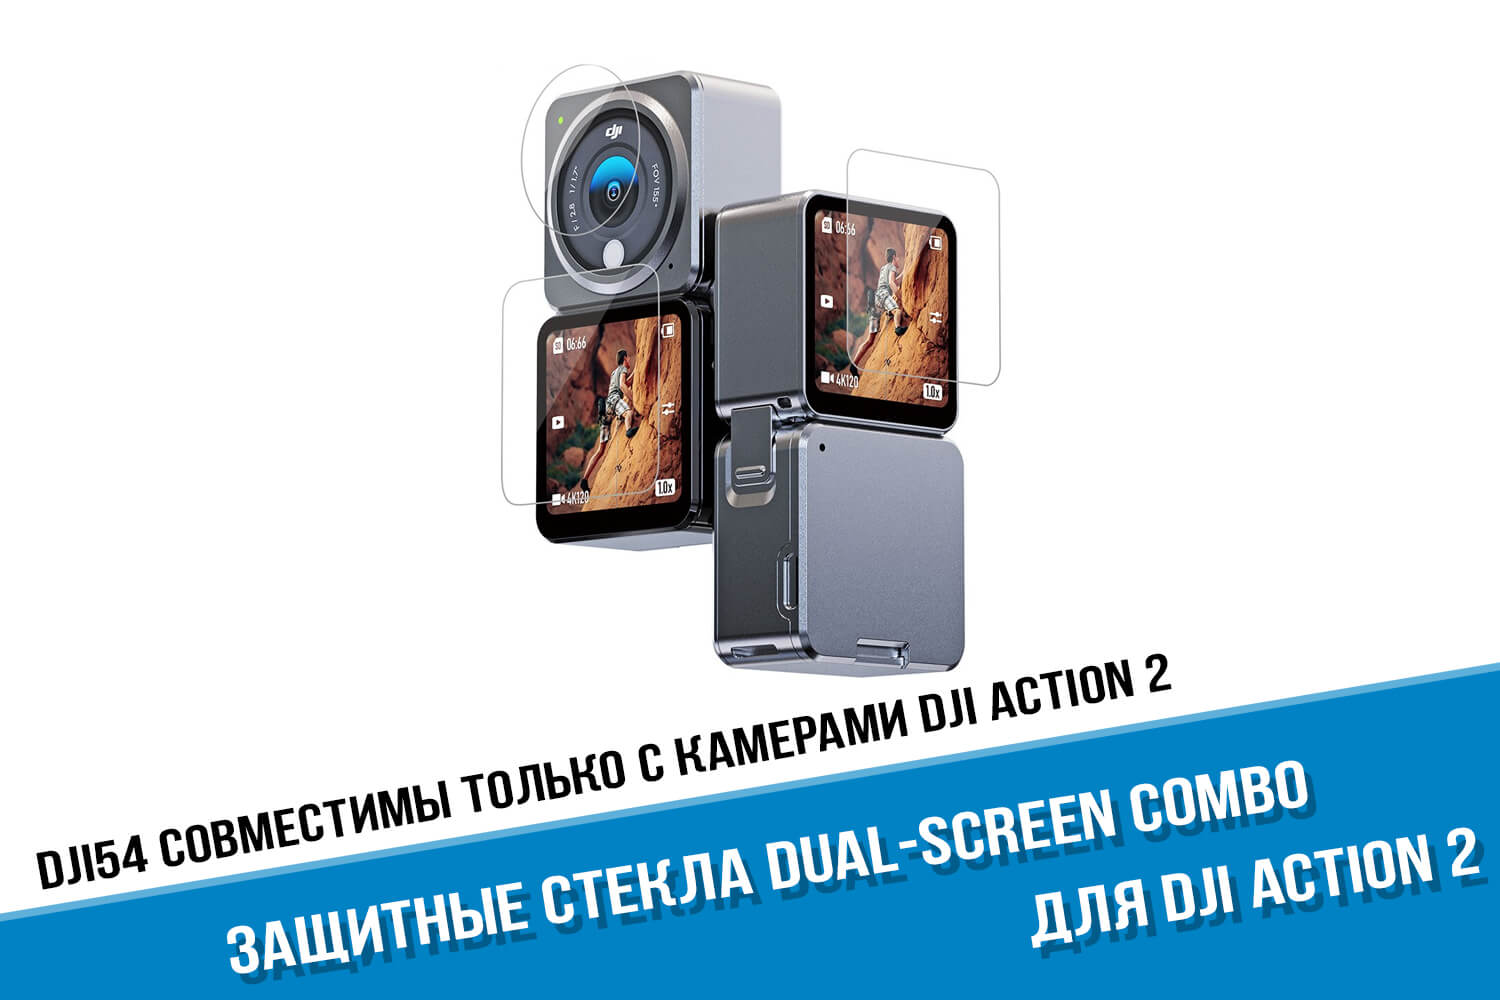 Защитные стекла для камеры DJI Action 2 Dual-Screen Combo.